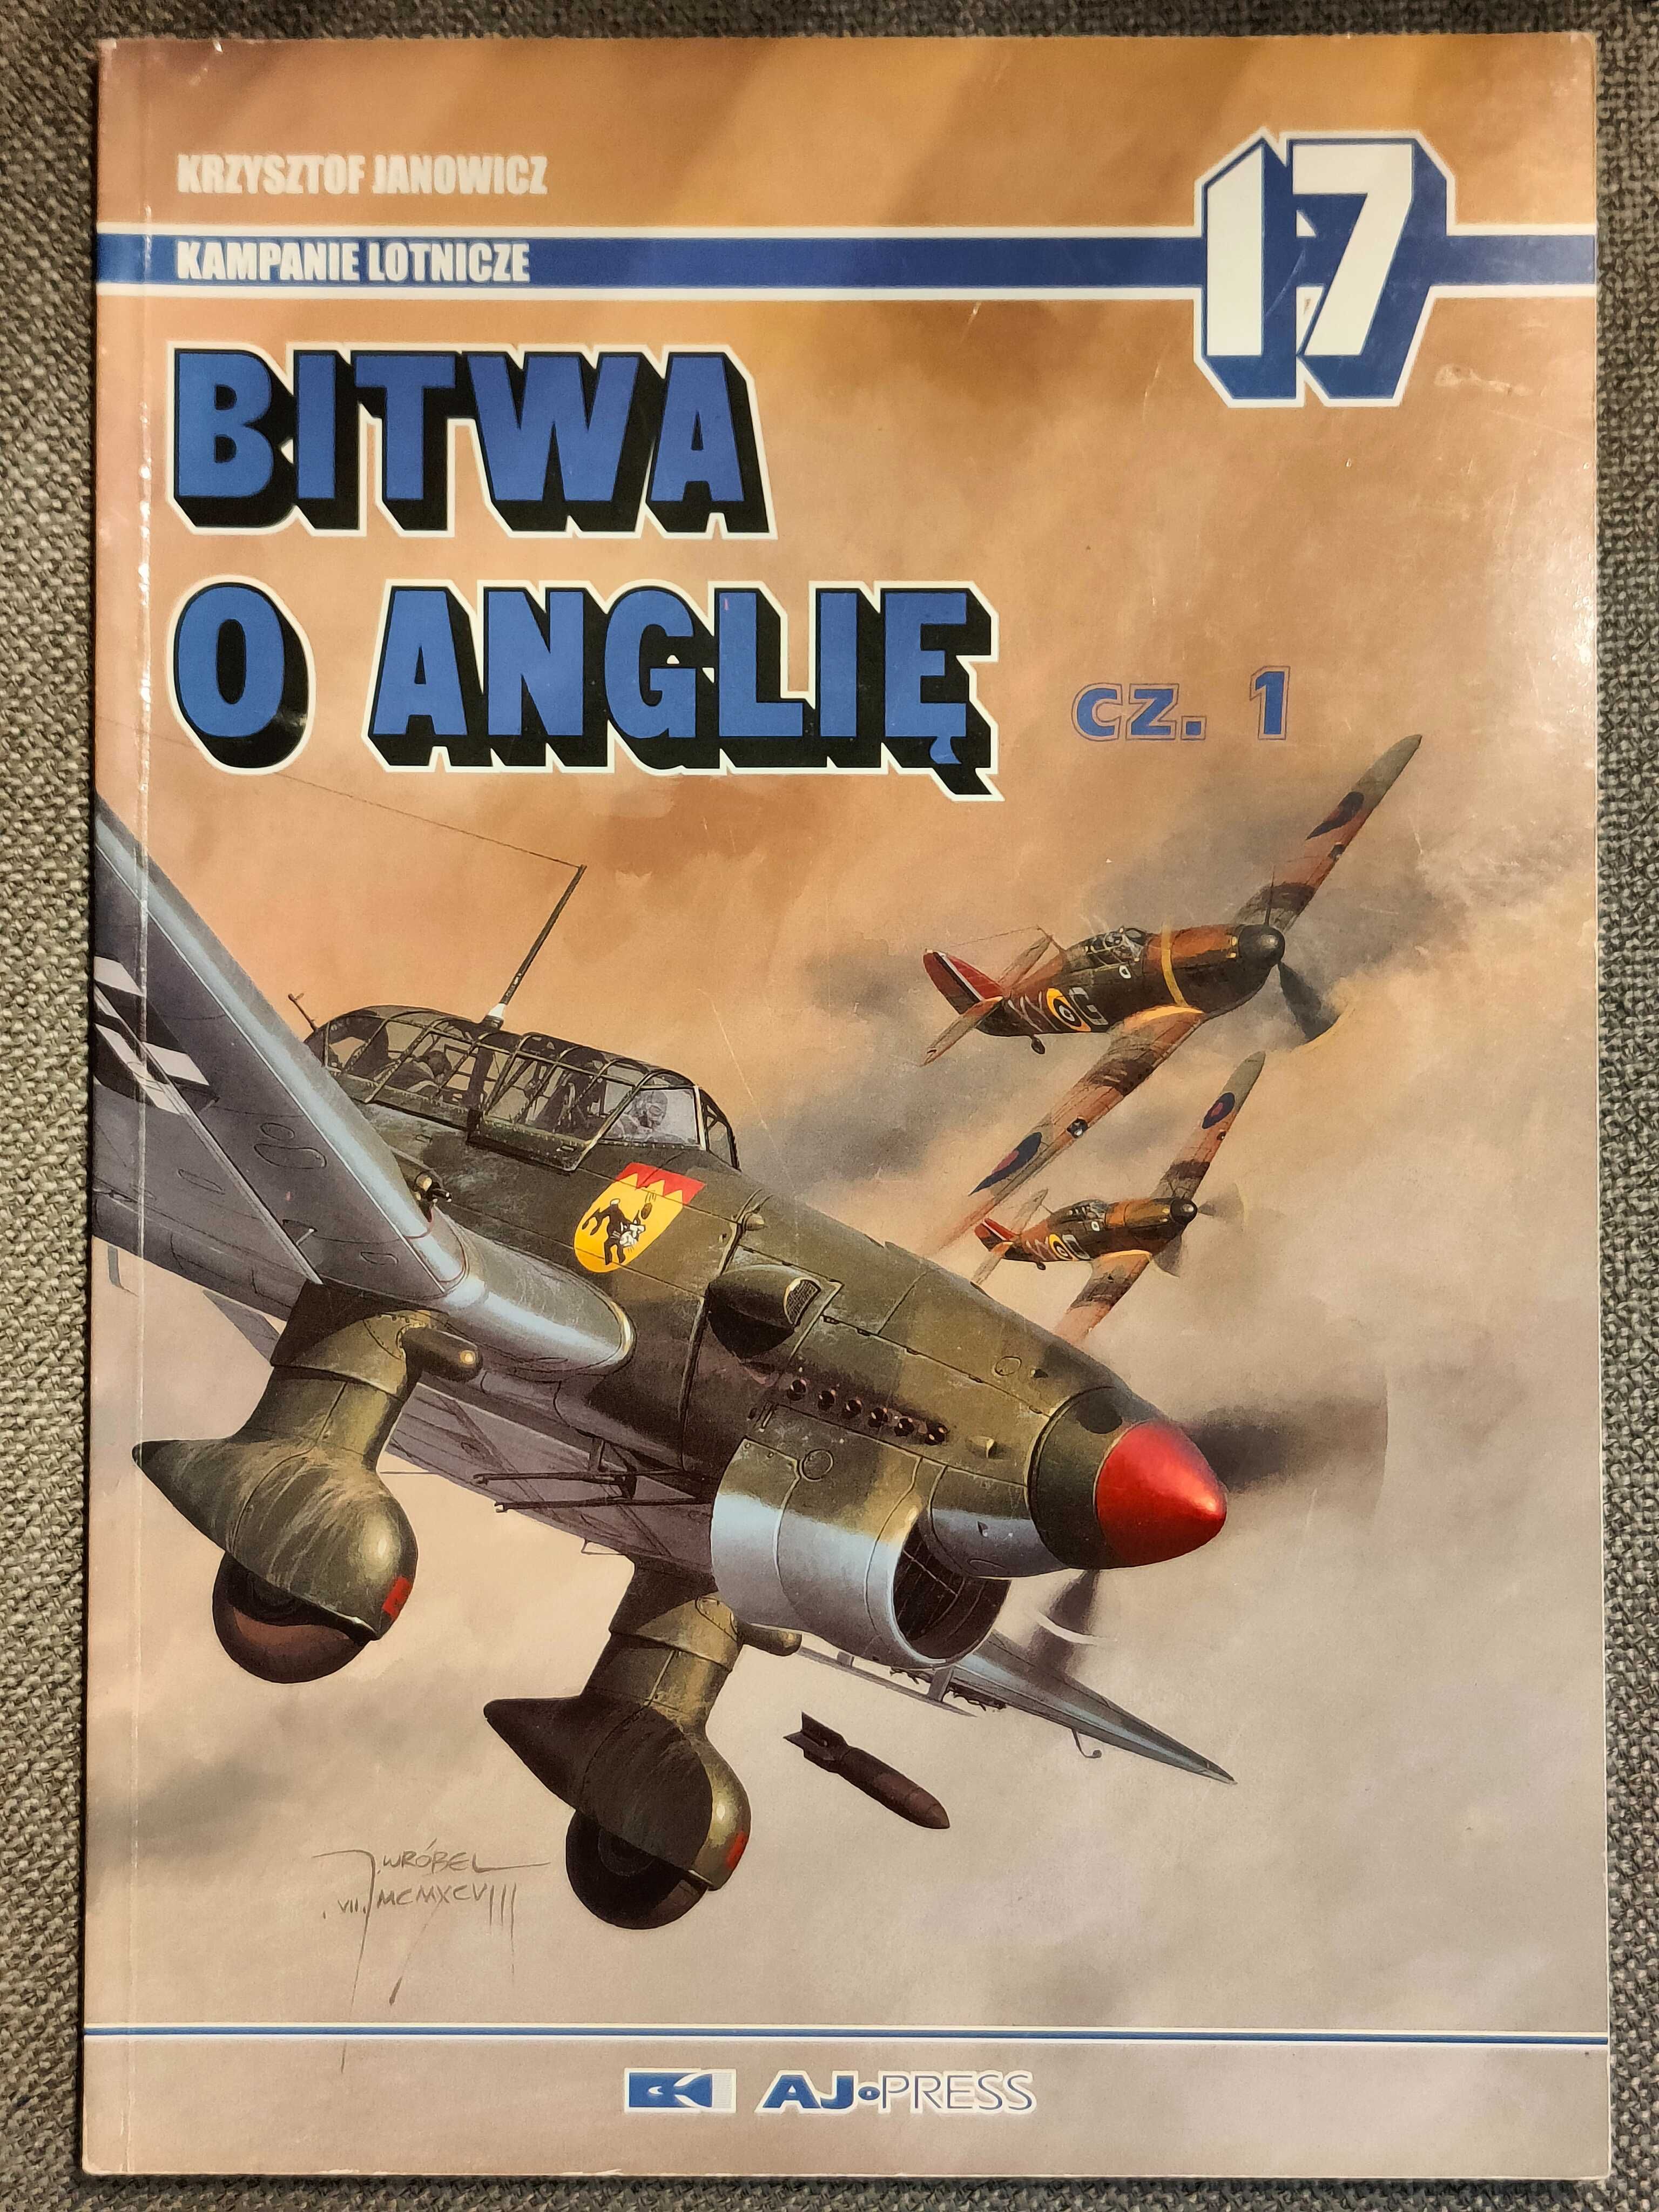 Bitwa o Anglię cz 1 Kampanie Lotnicze 17 AJ Press